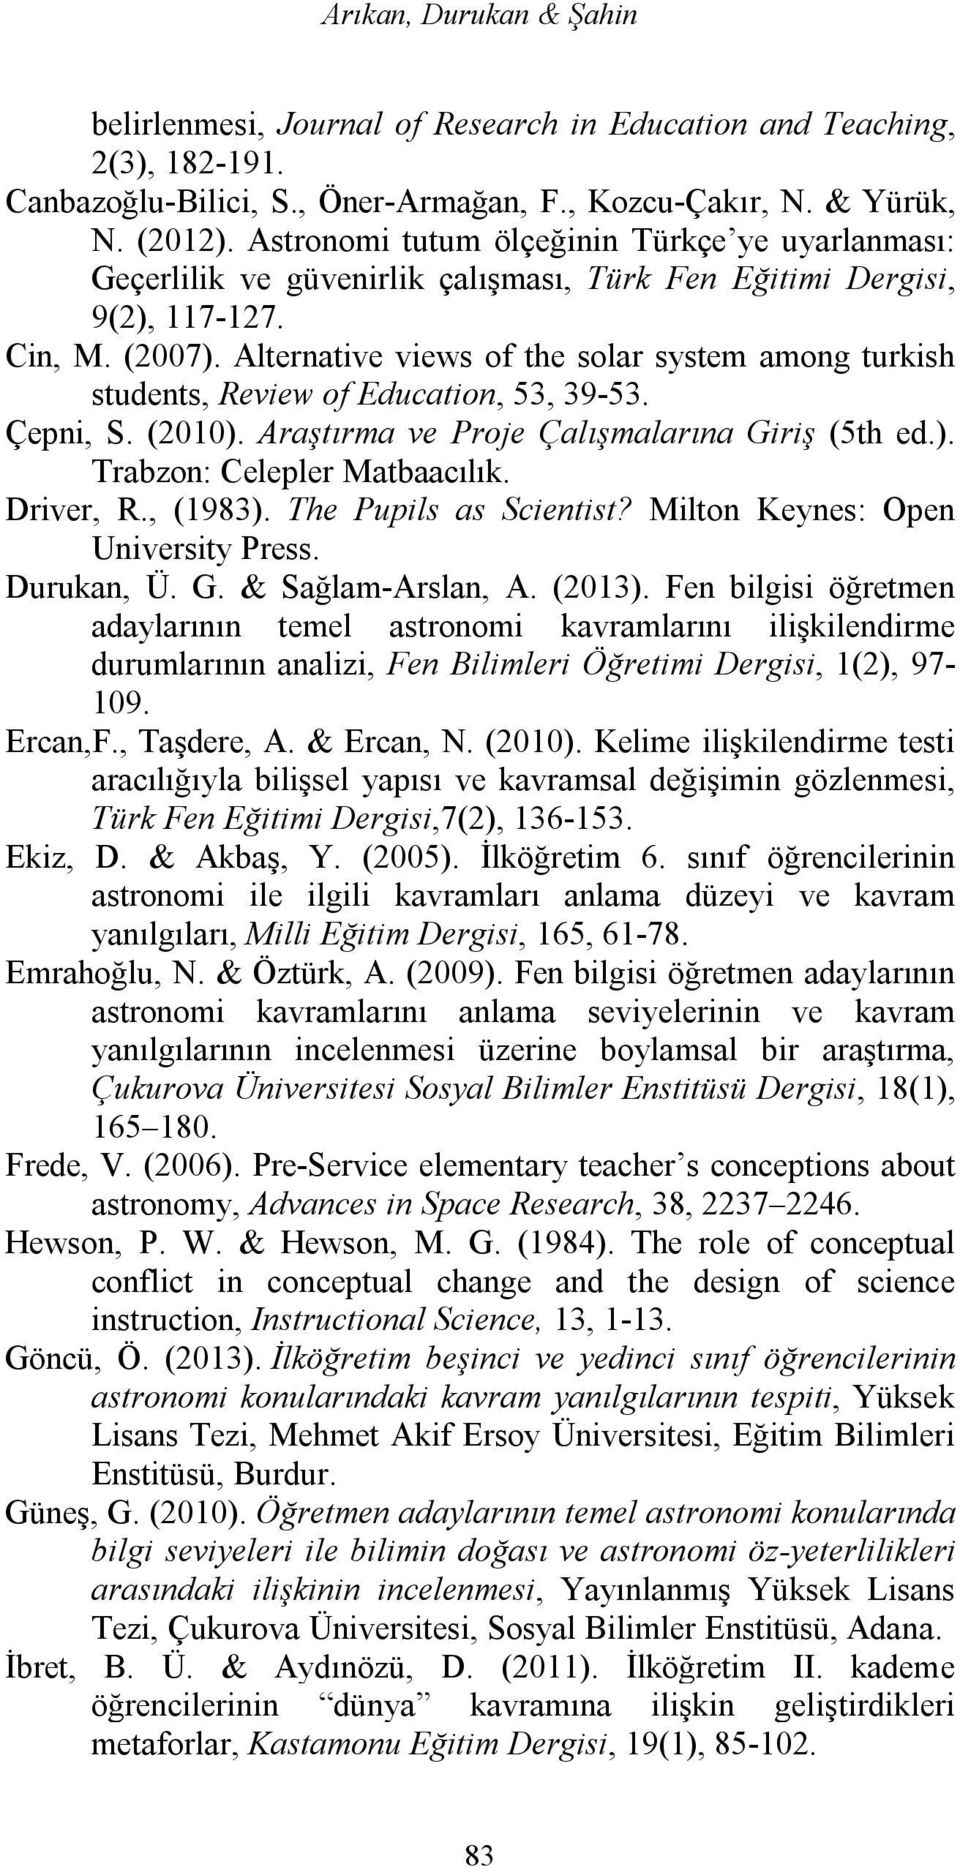 Alternative views of the solar system among turkish students, Review of Education, 53, 39-53. Çepni, S. (2010). Araştırma ve Proje Çalışmalarına Giriş (5th ed.). Trabzon: Celepler Matbaacılık.